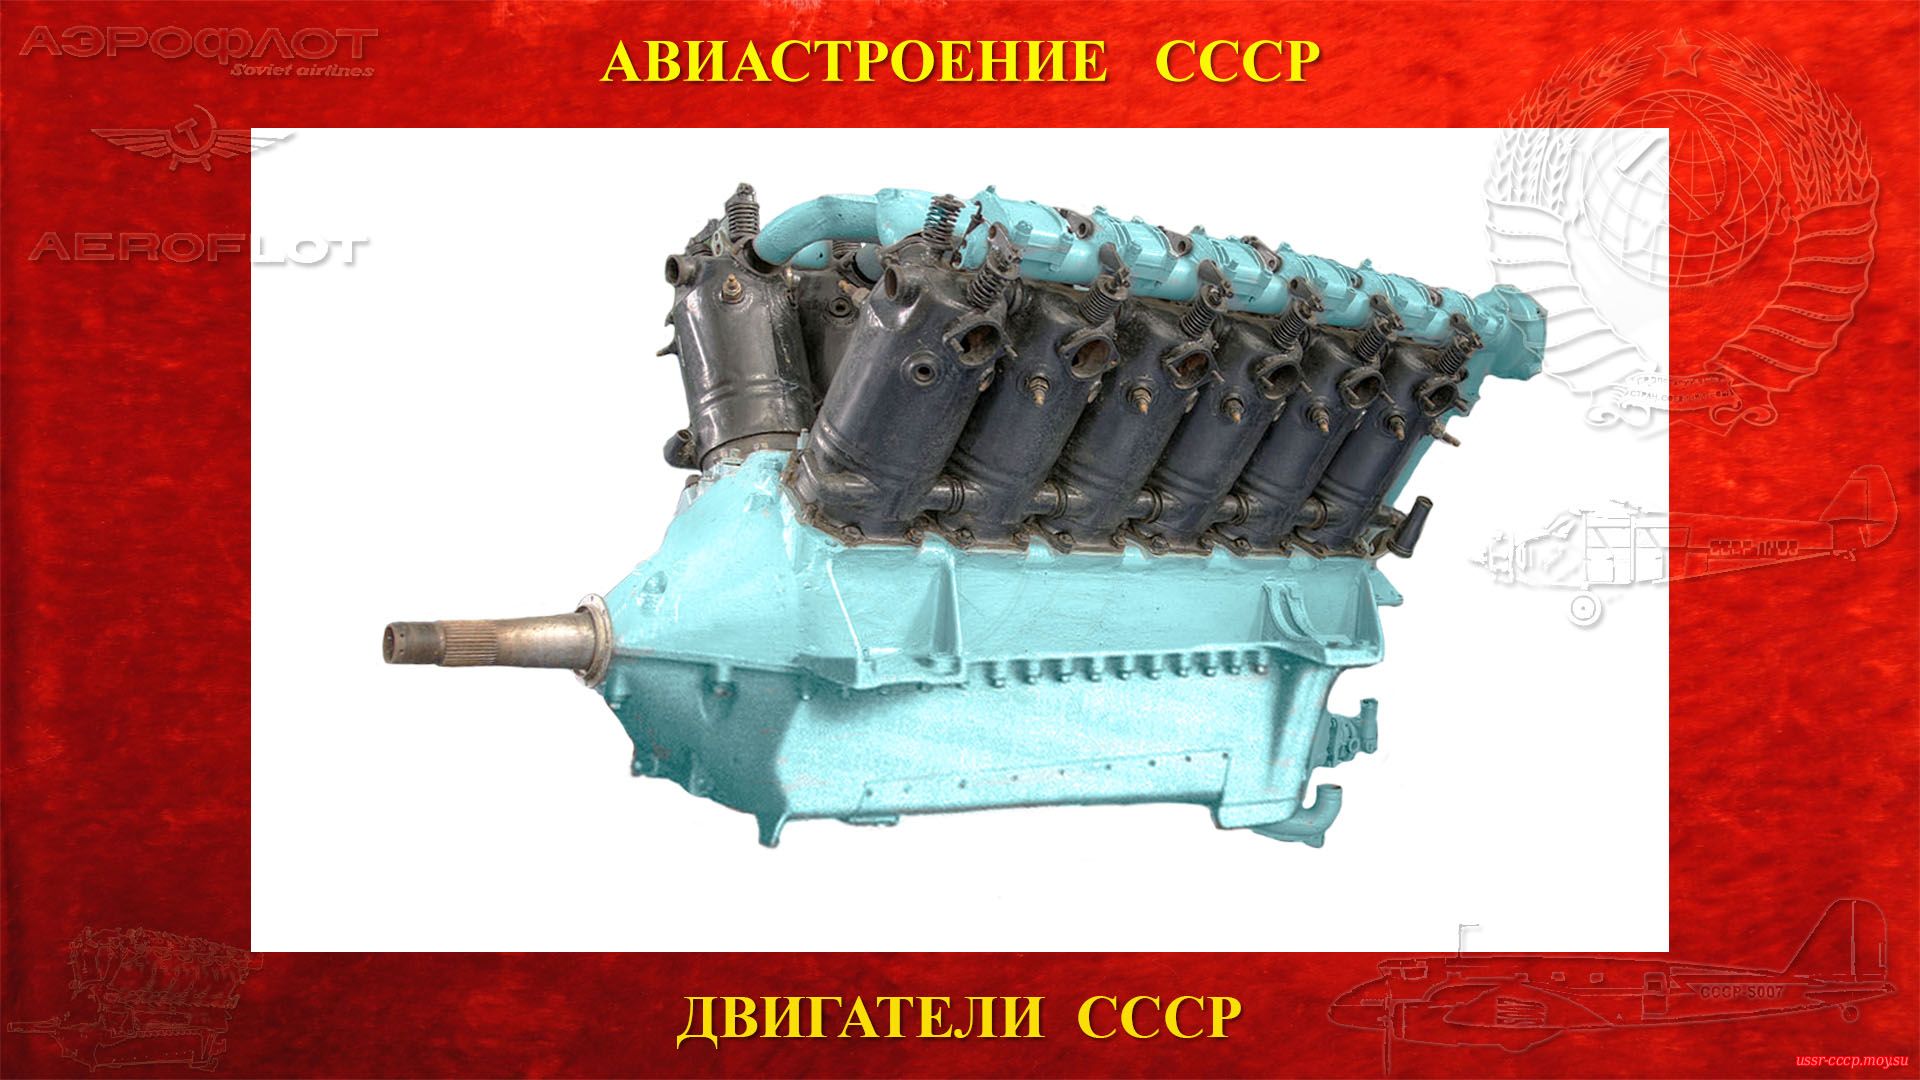 М-17 — Советский авиационный поршневой двигатель СССР